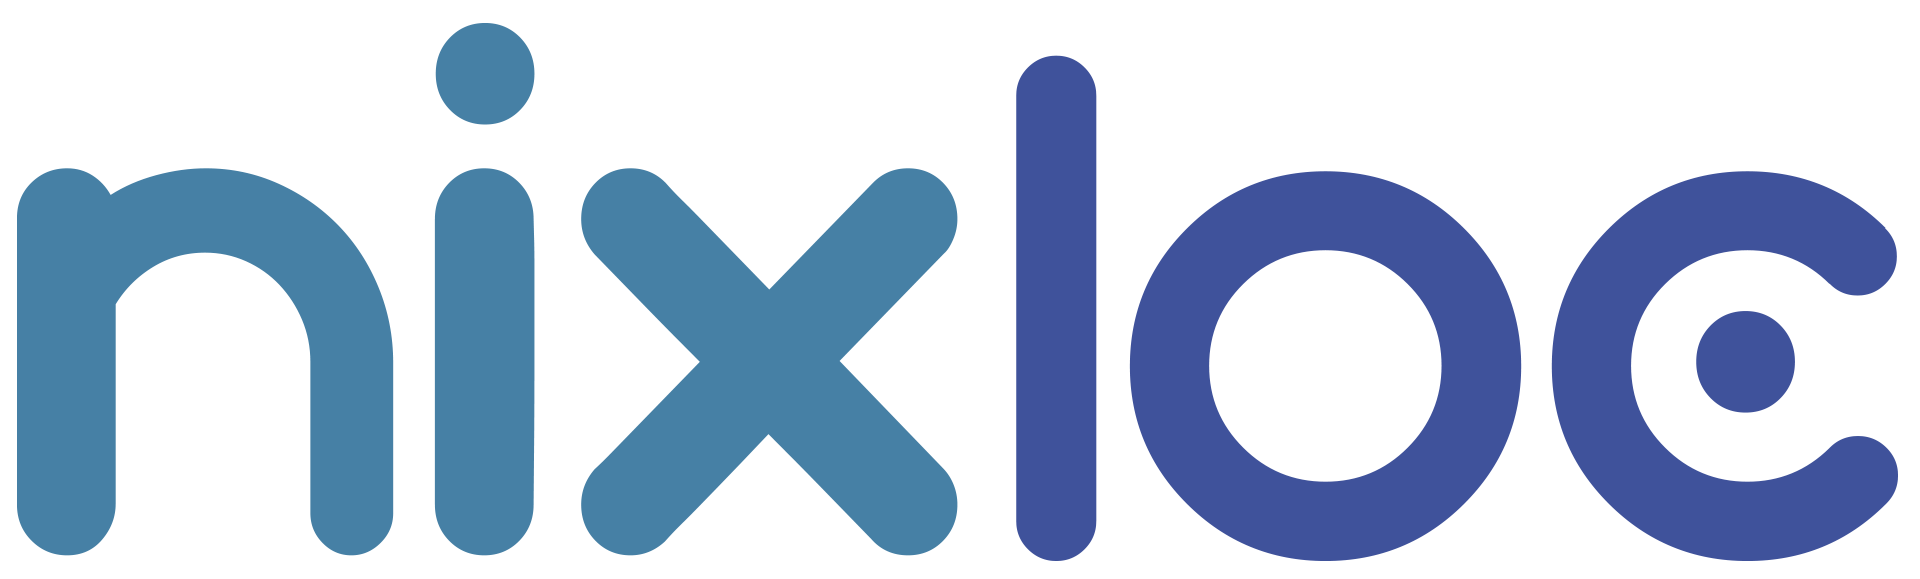 logo_nixloc_final